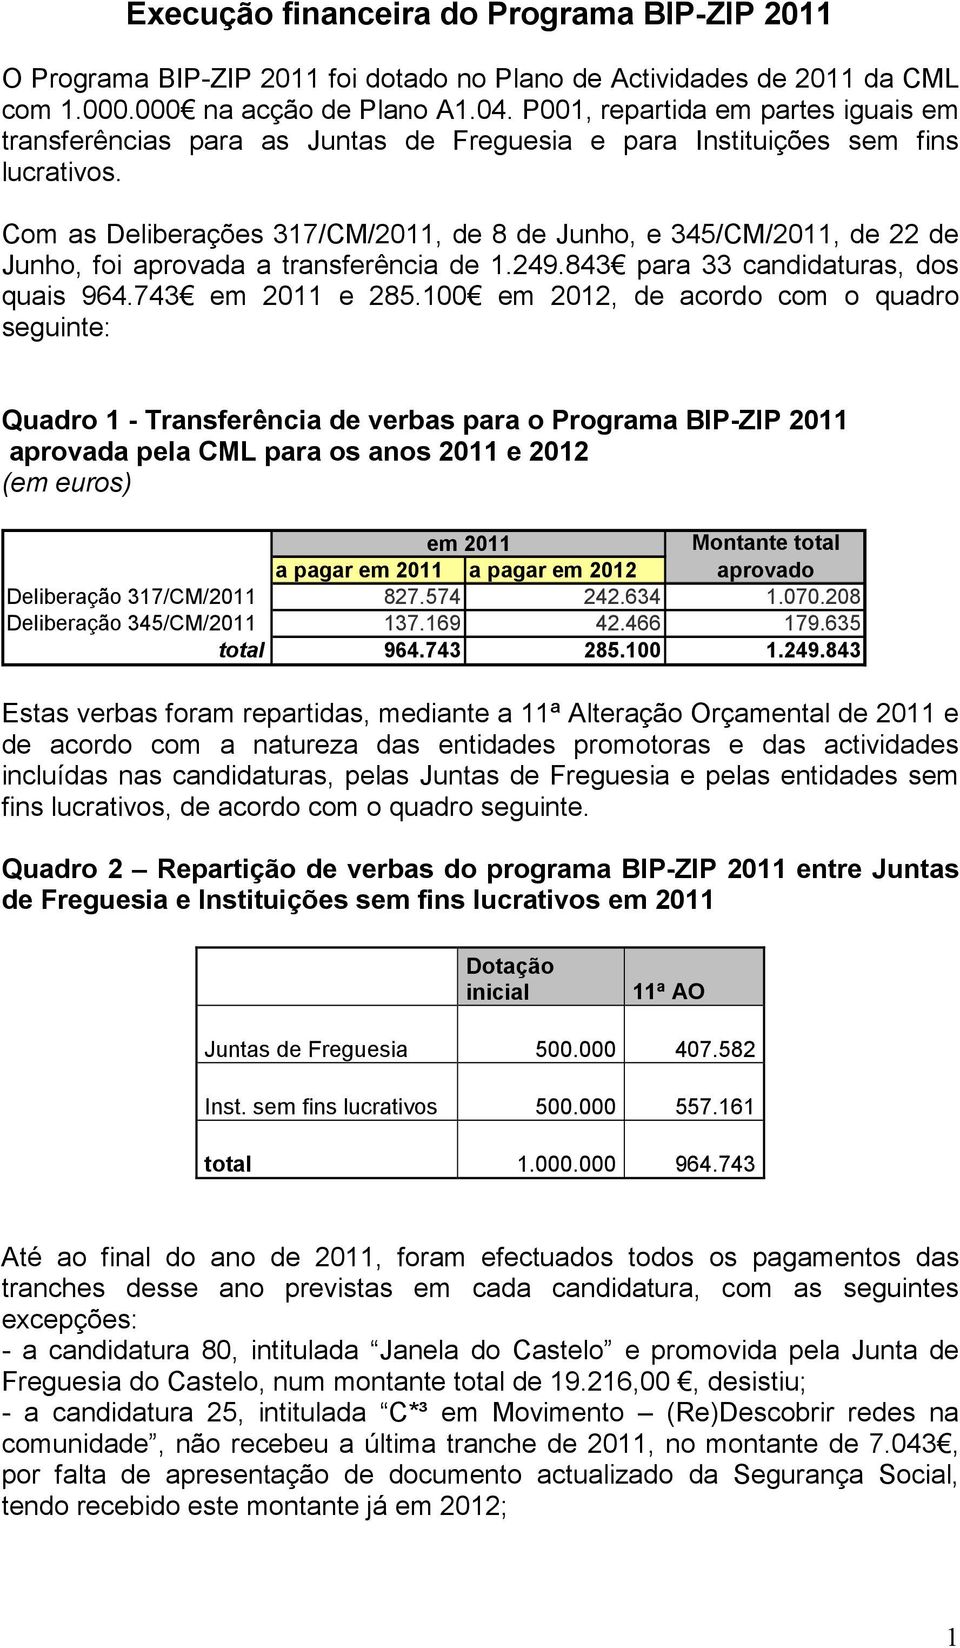 Com as Deliberações 317/CM/2011, de 8 de Junho, e 345/CM/2011, de 22 de Junho, foi aprovada a transferência de 1.249.843 para 33 candidaturas, dos quais 964.743 em 2011 e 285.